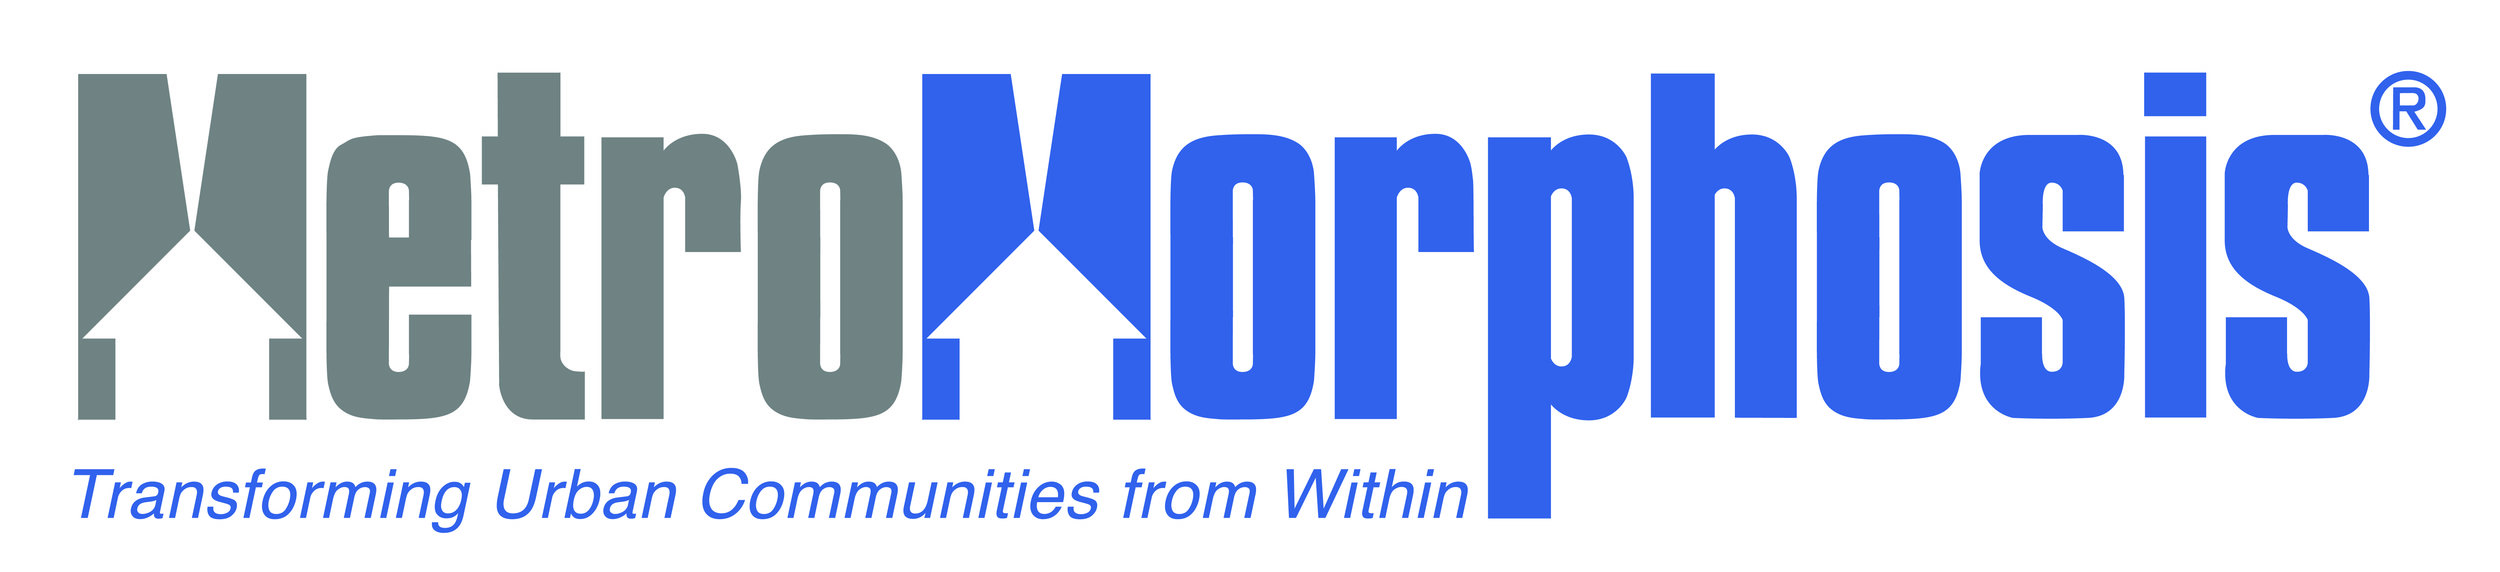 MetroMorphosis-Vector-Logo-01.jpg